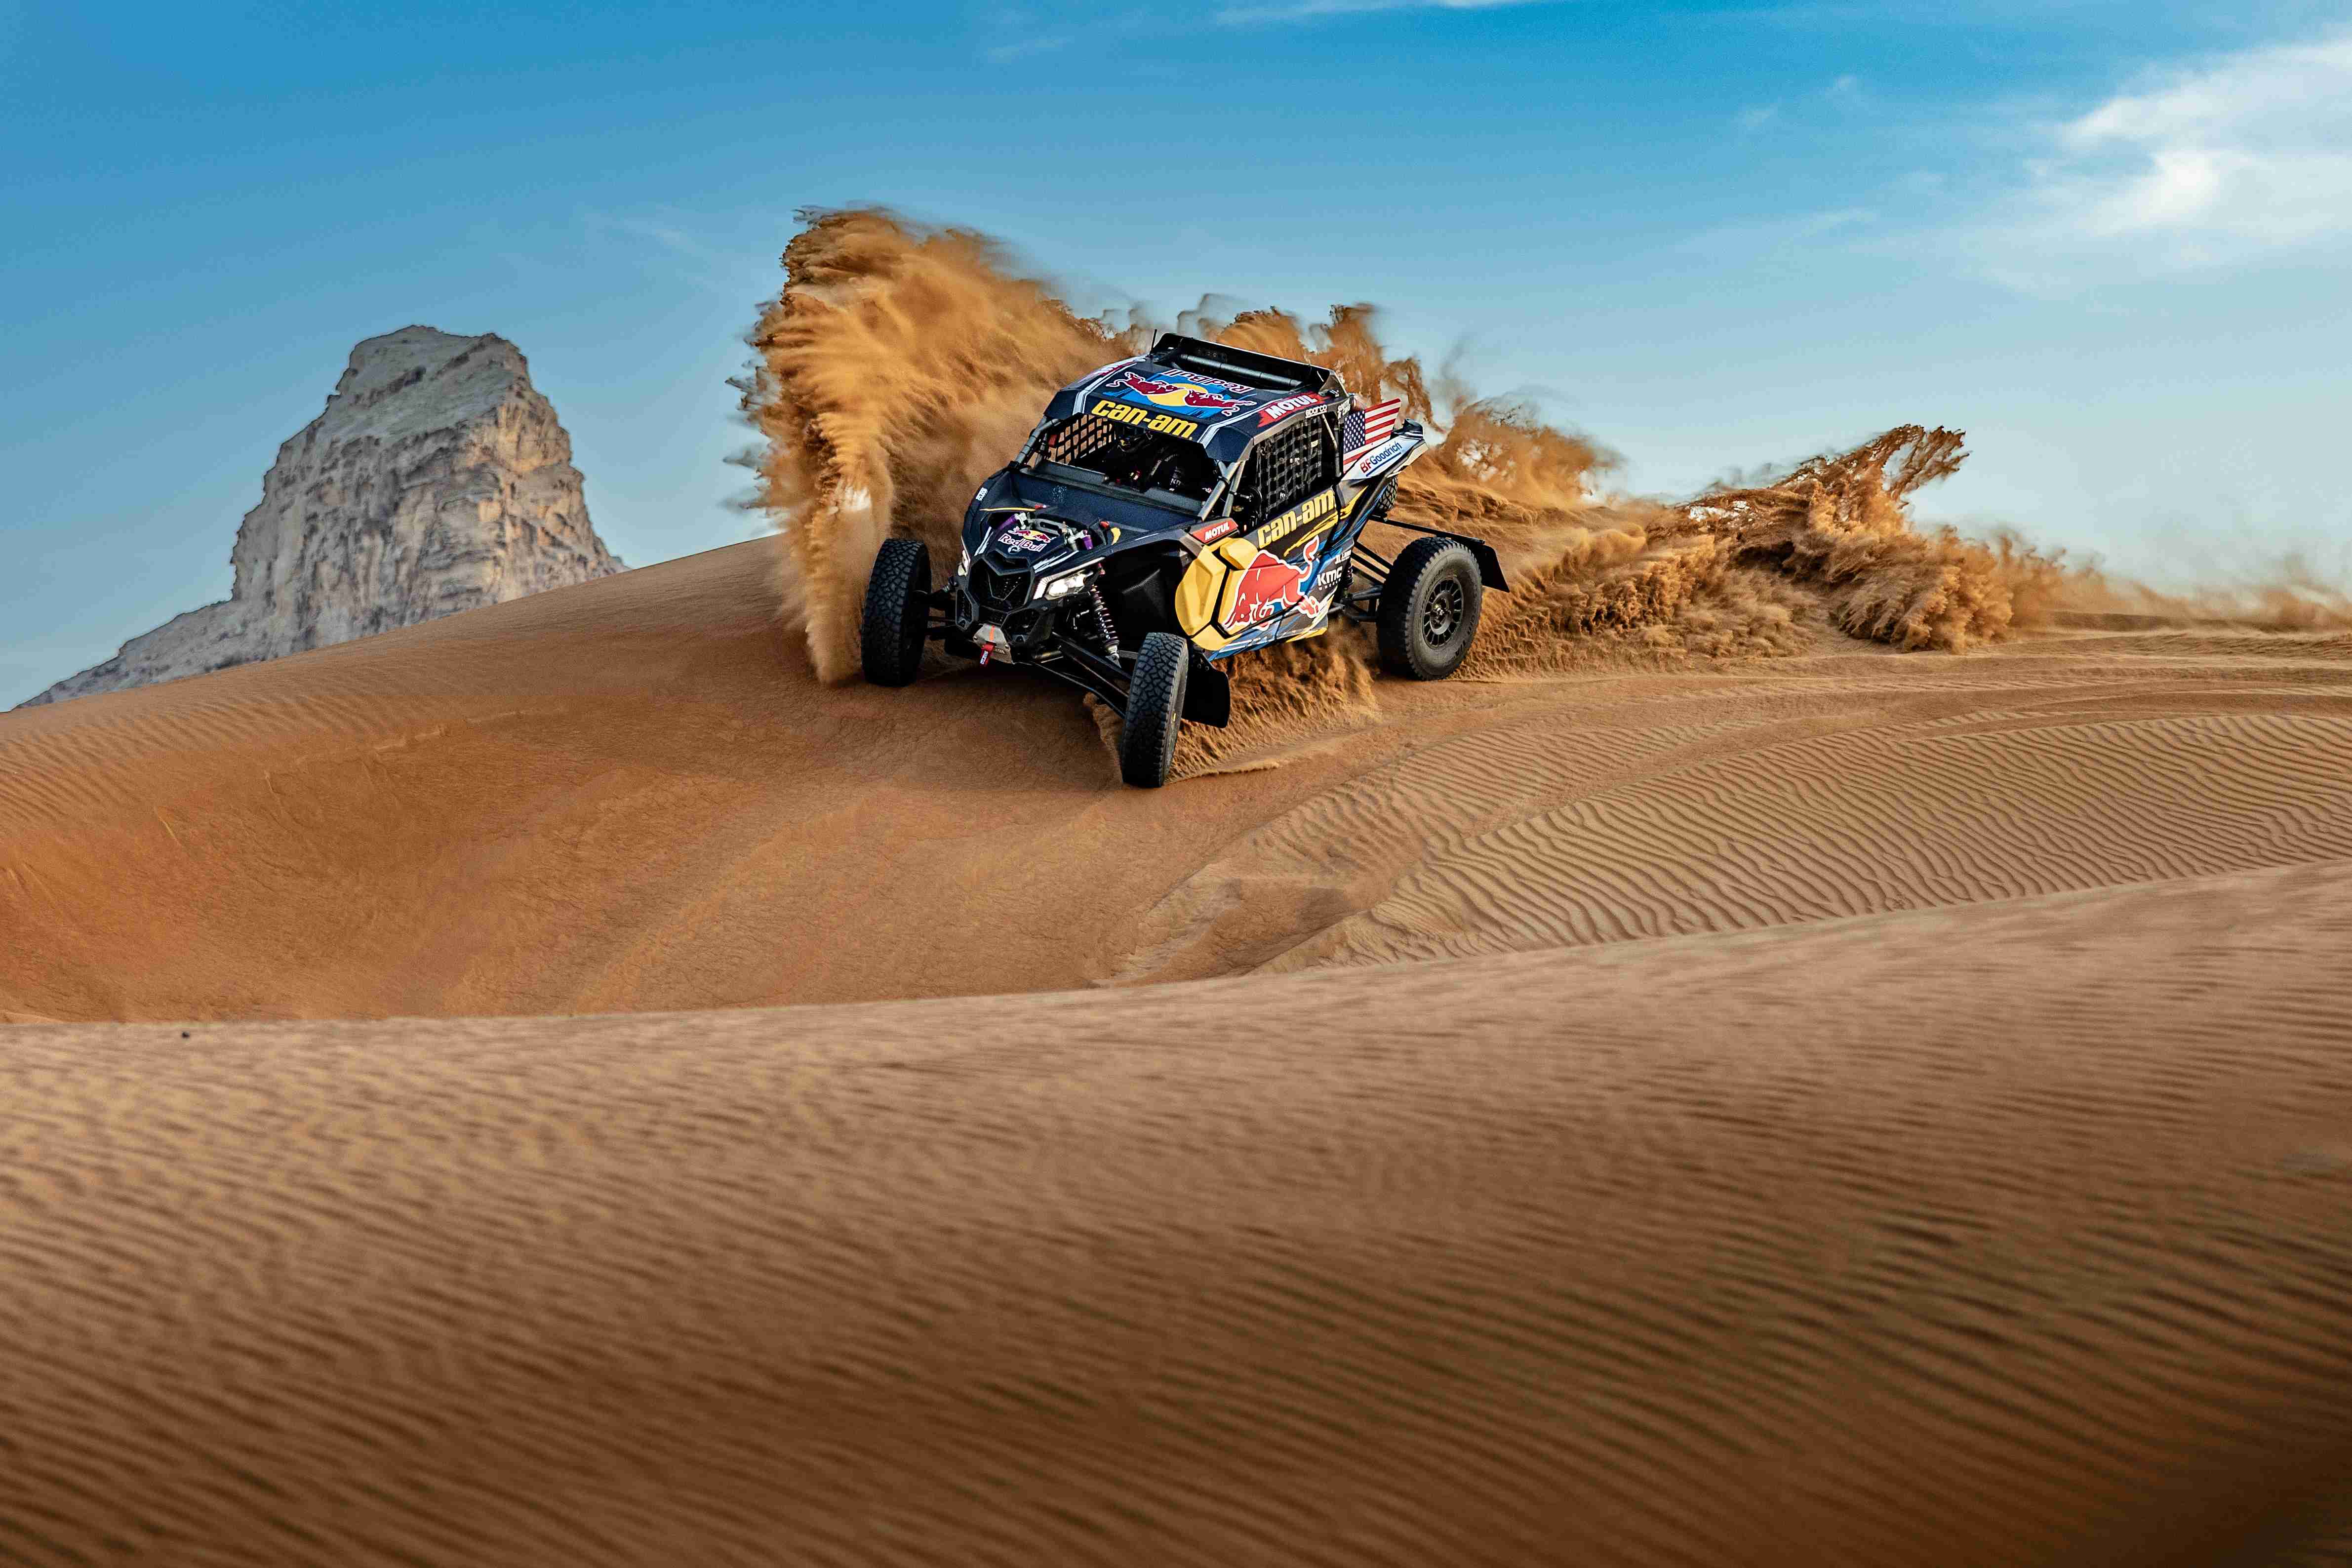 Maverick roulant sur une dune de sable dans le désert